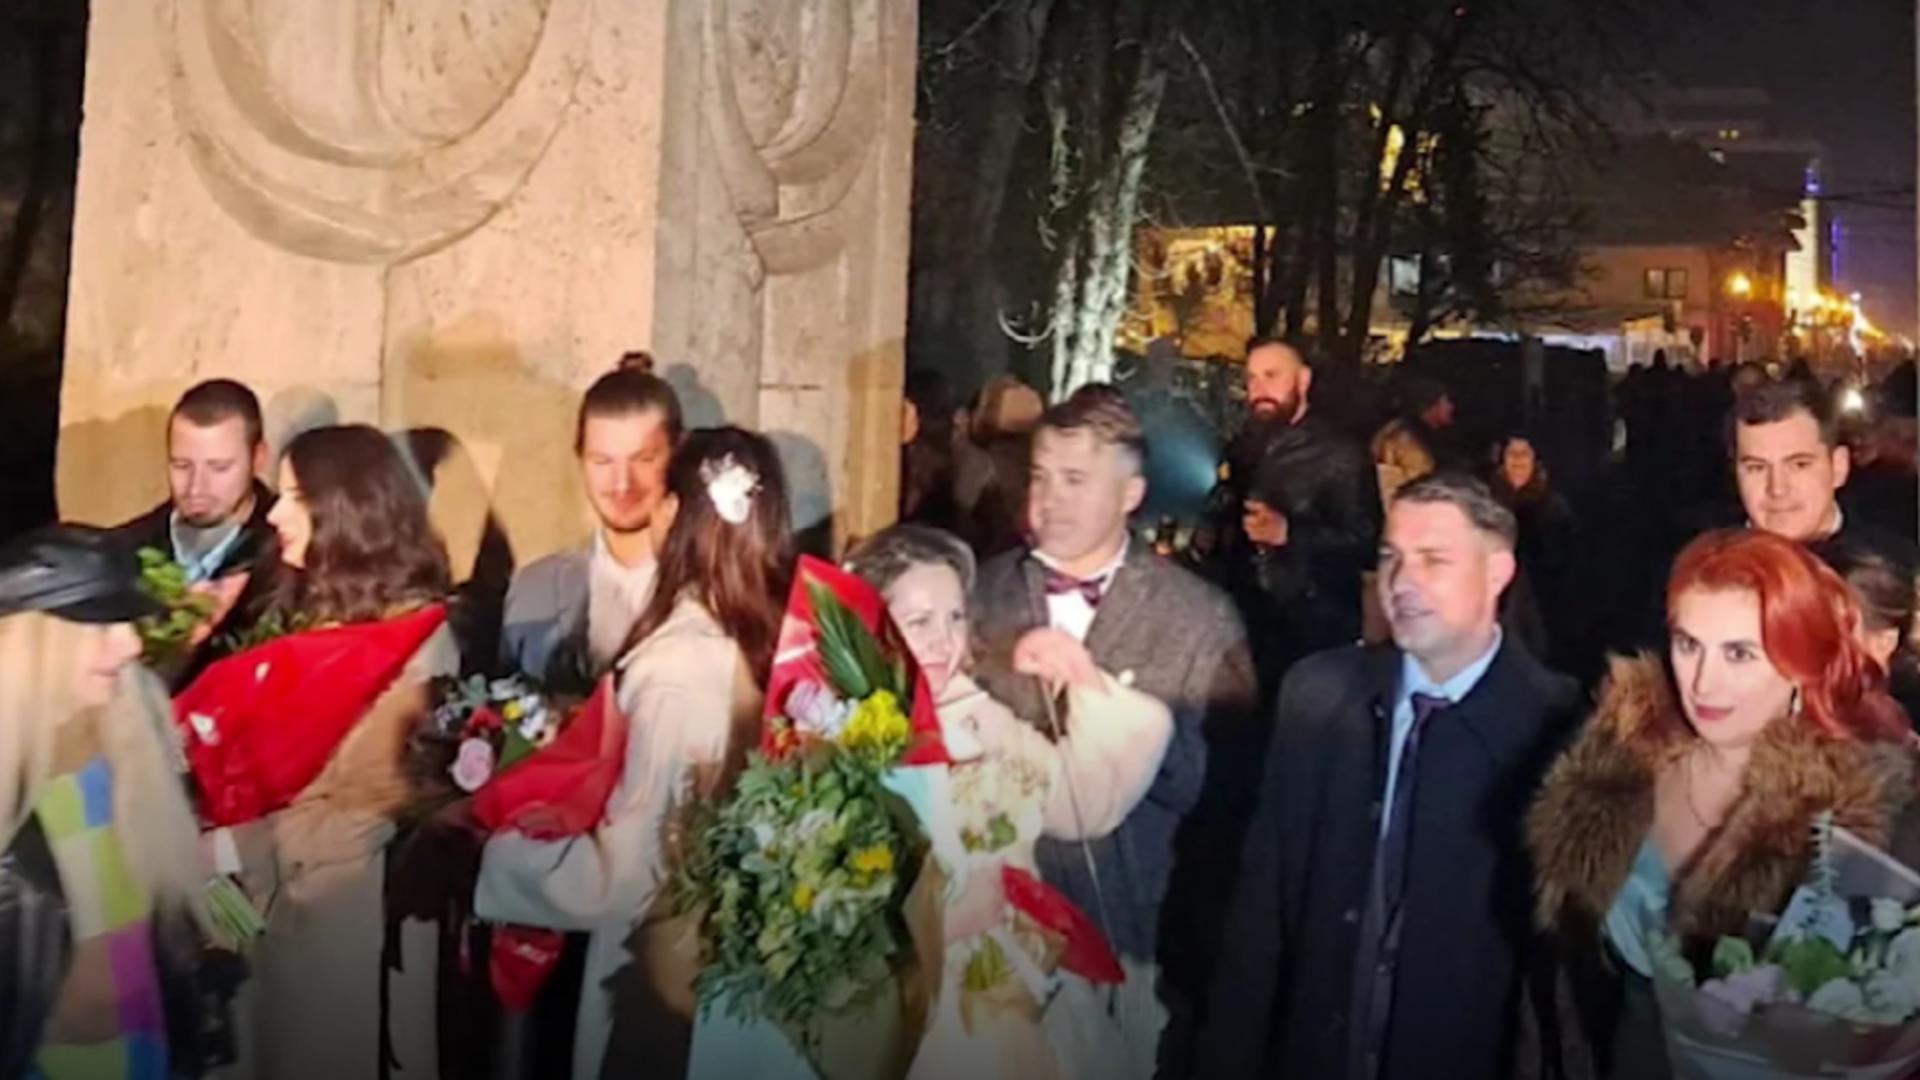 10 cupluri s-au căsătorit de Revelion. Momente emoționante la Poarta Sărutului din Târgu Jiu/ Captură foto